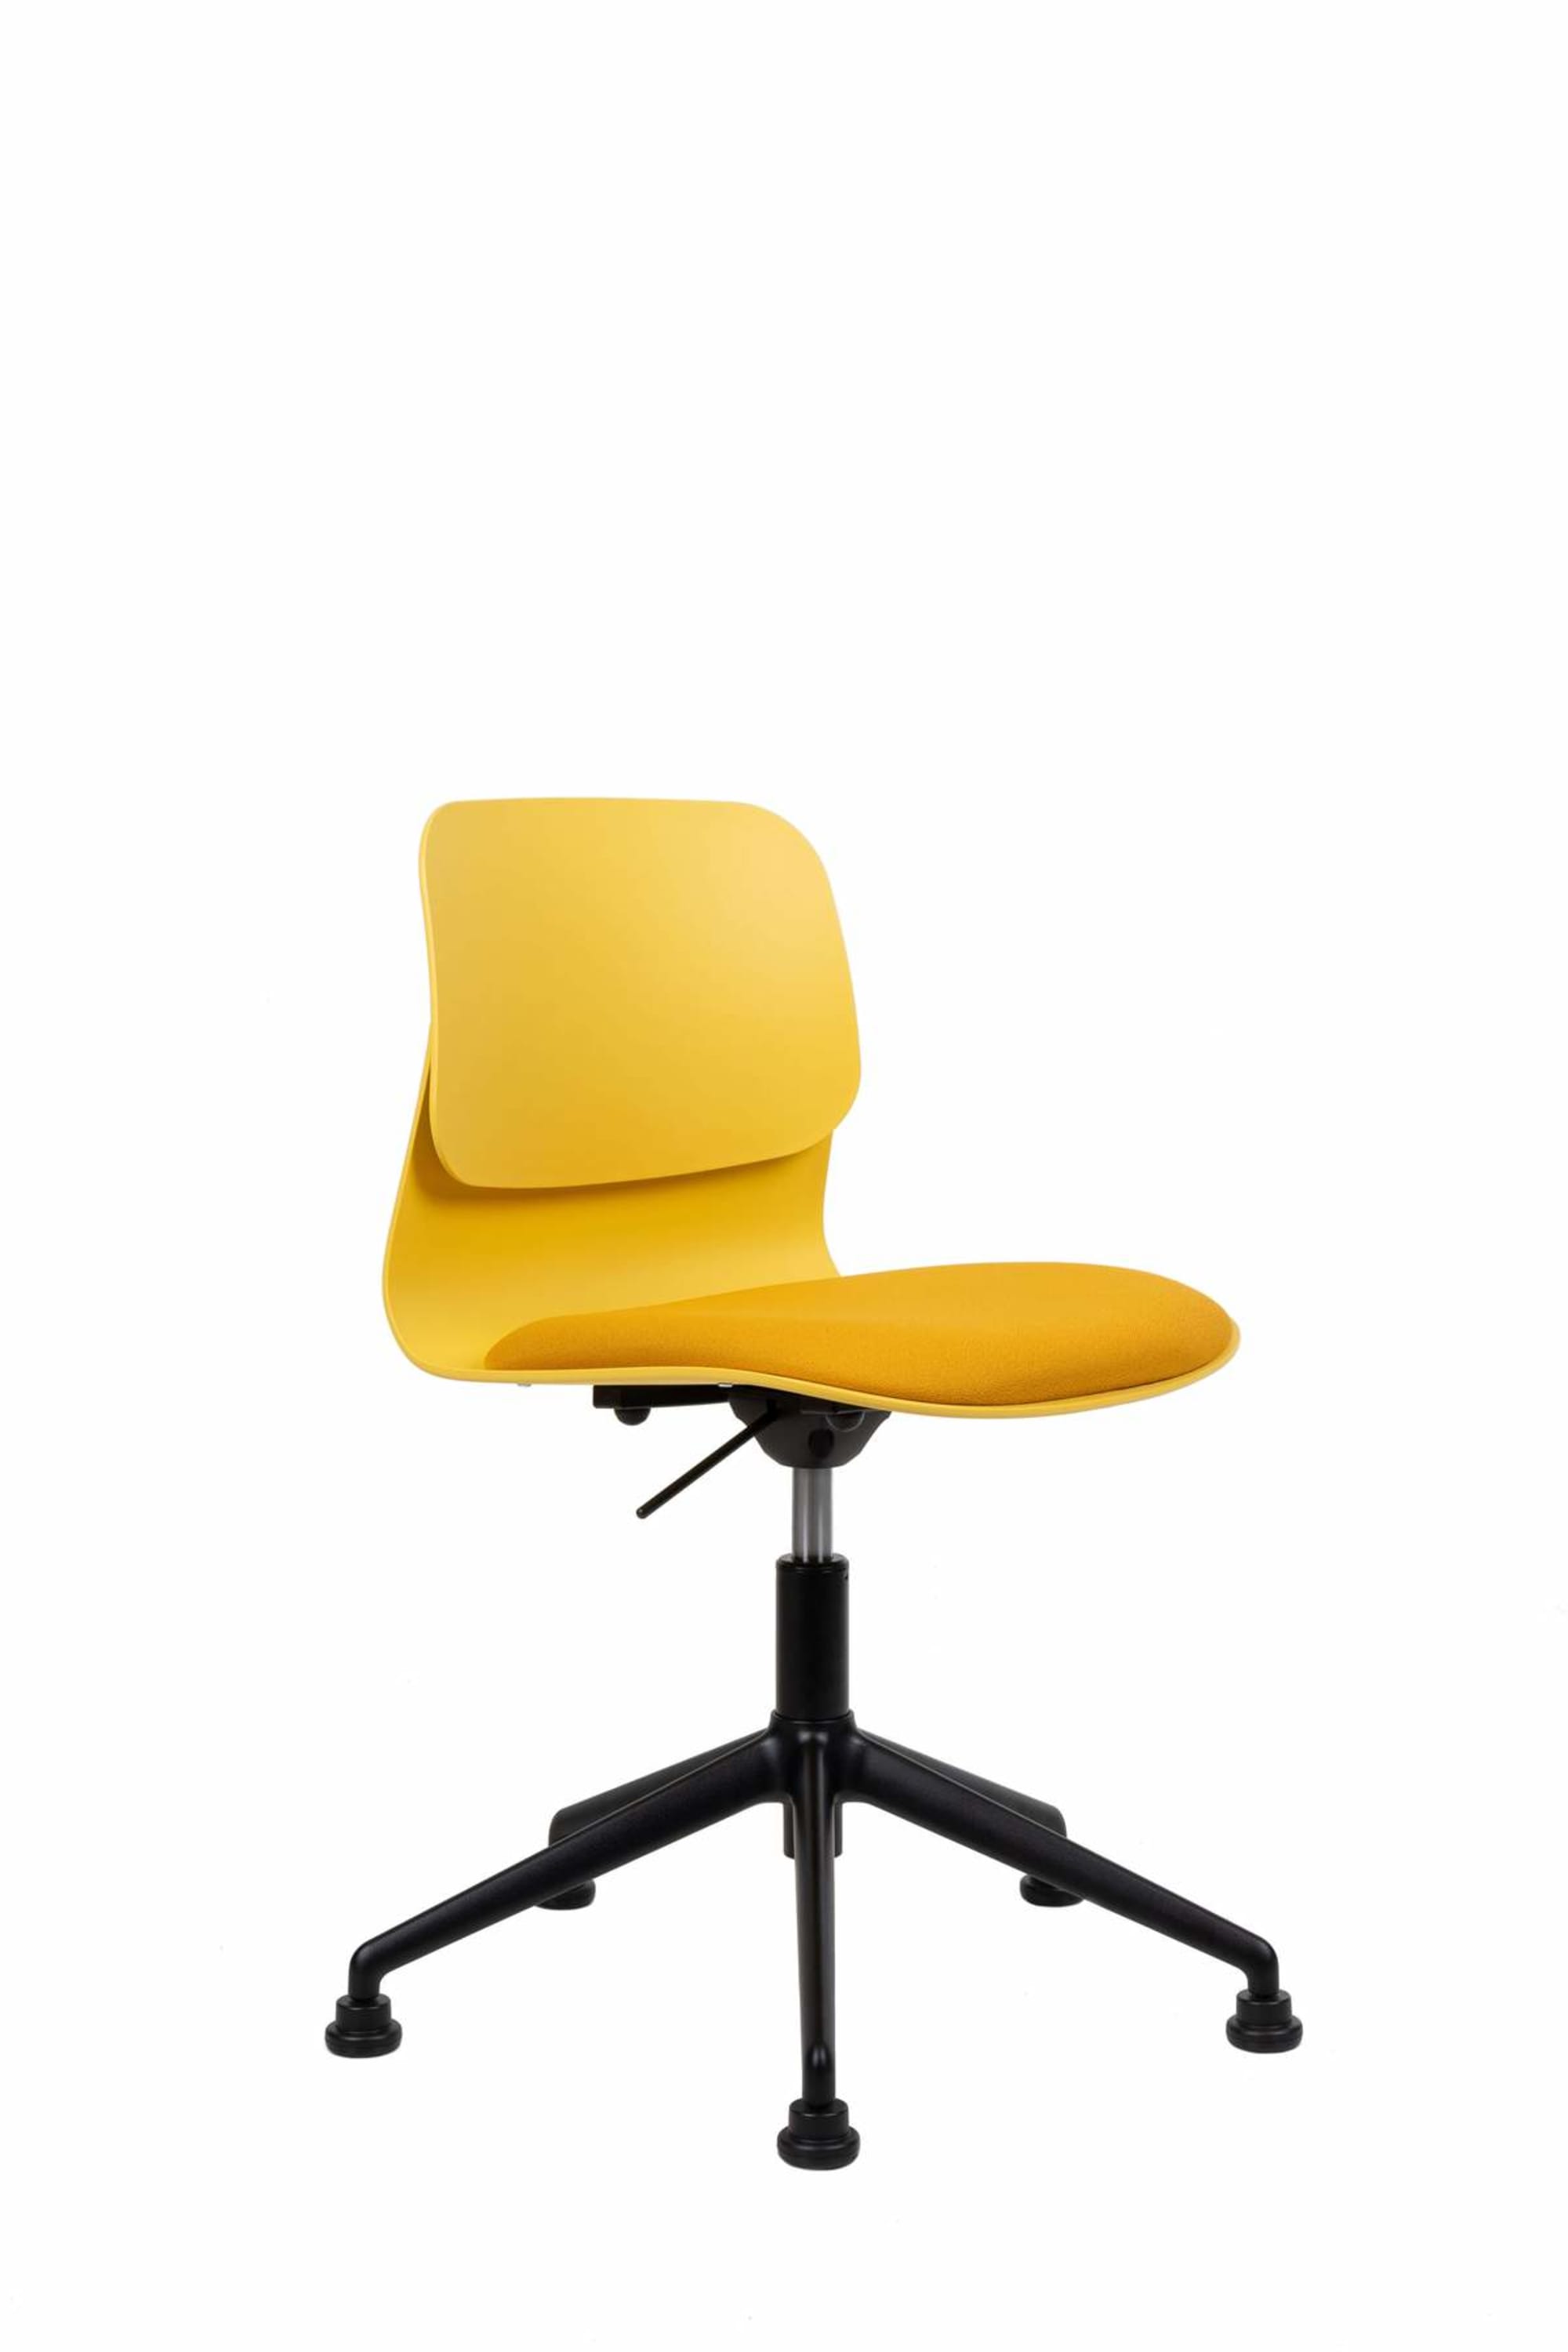 Slean - chaise de bureau design jaune pivotante sur roulettes - h82 x l50 x pr44 cm_0